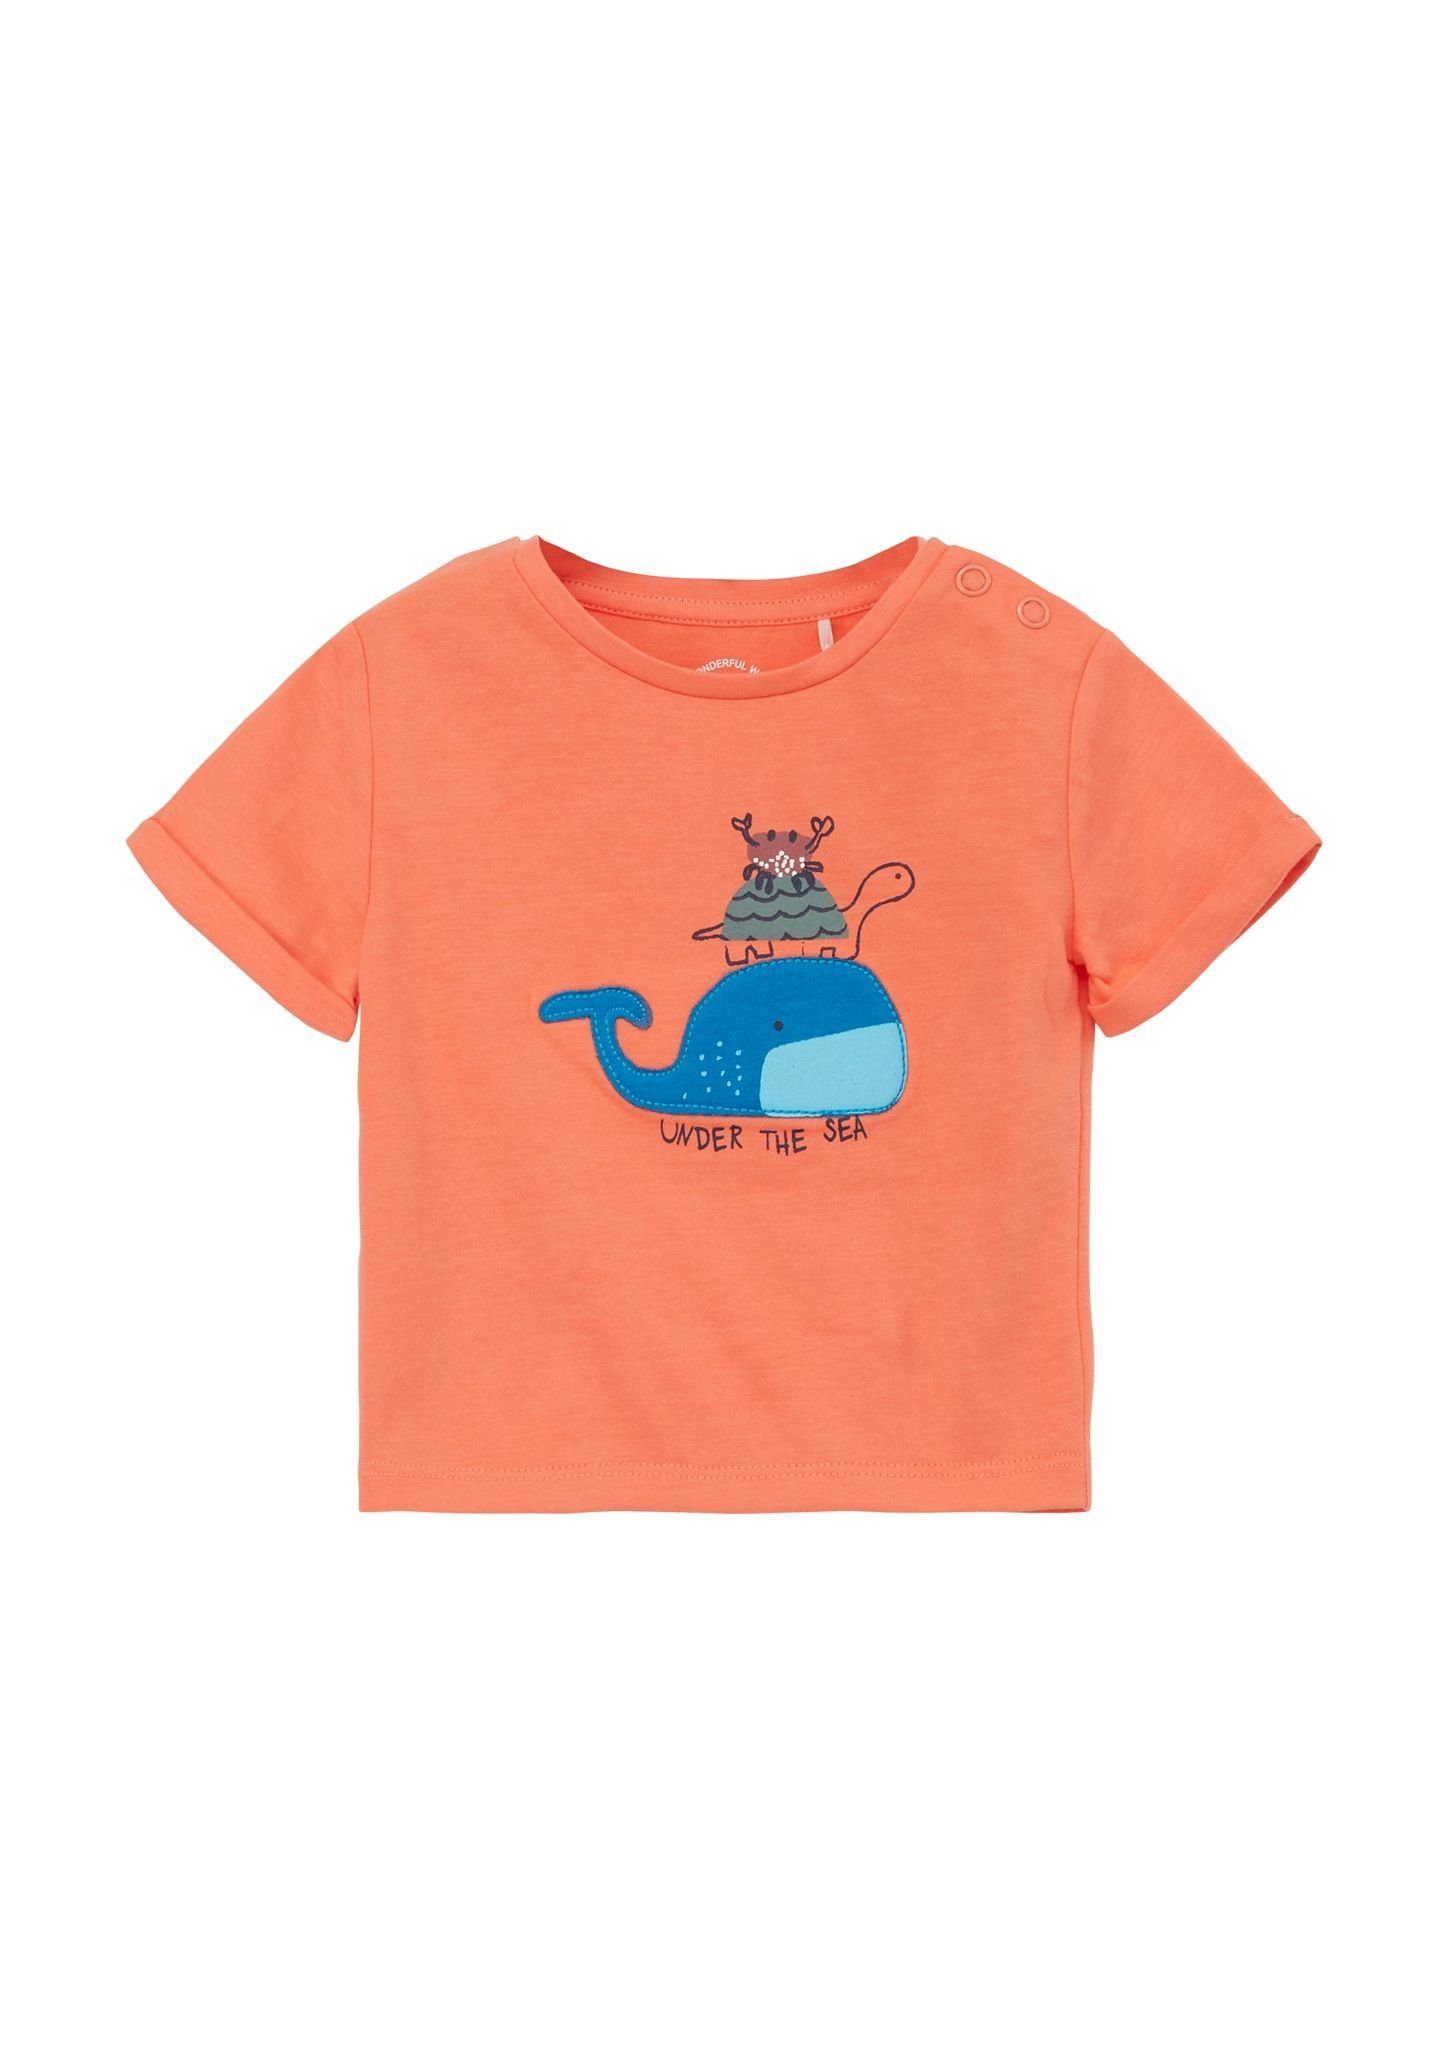 Junior orange T-Shirt s.Oliver